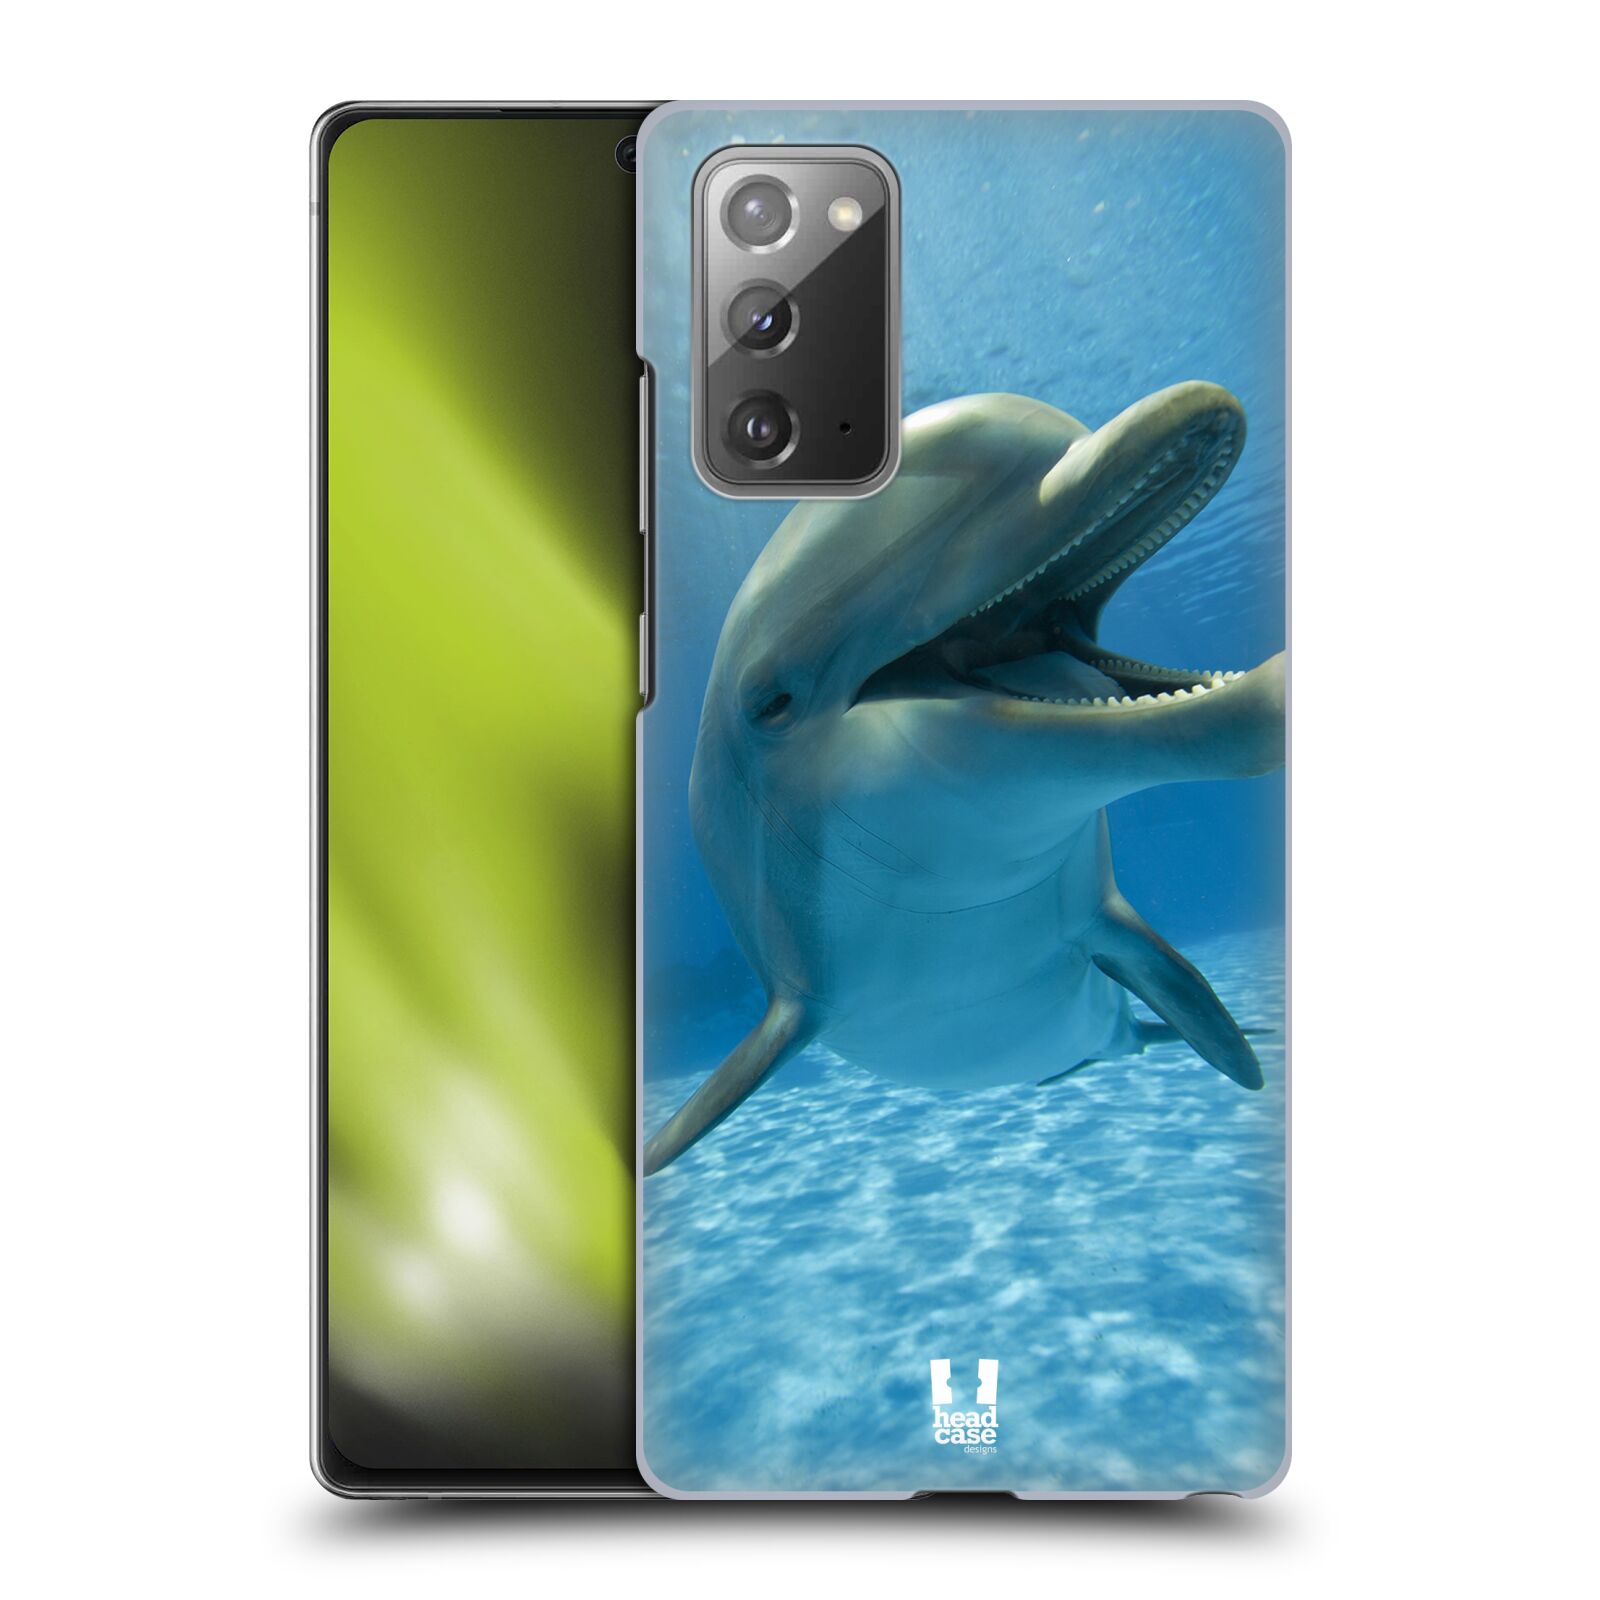 Zadní obal pro mobil Samsung Galaxy Note 20 - HEAD CASE - Svět zvířat delfín v moři